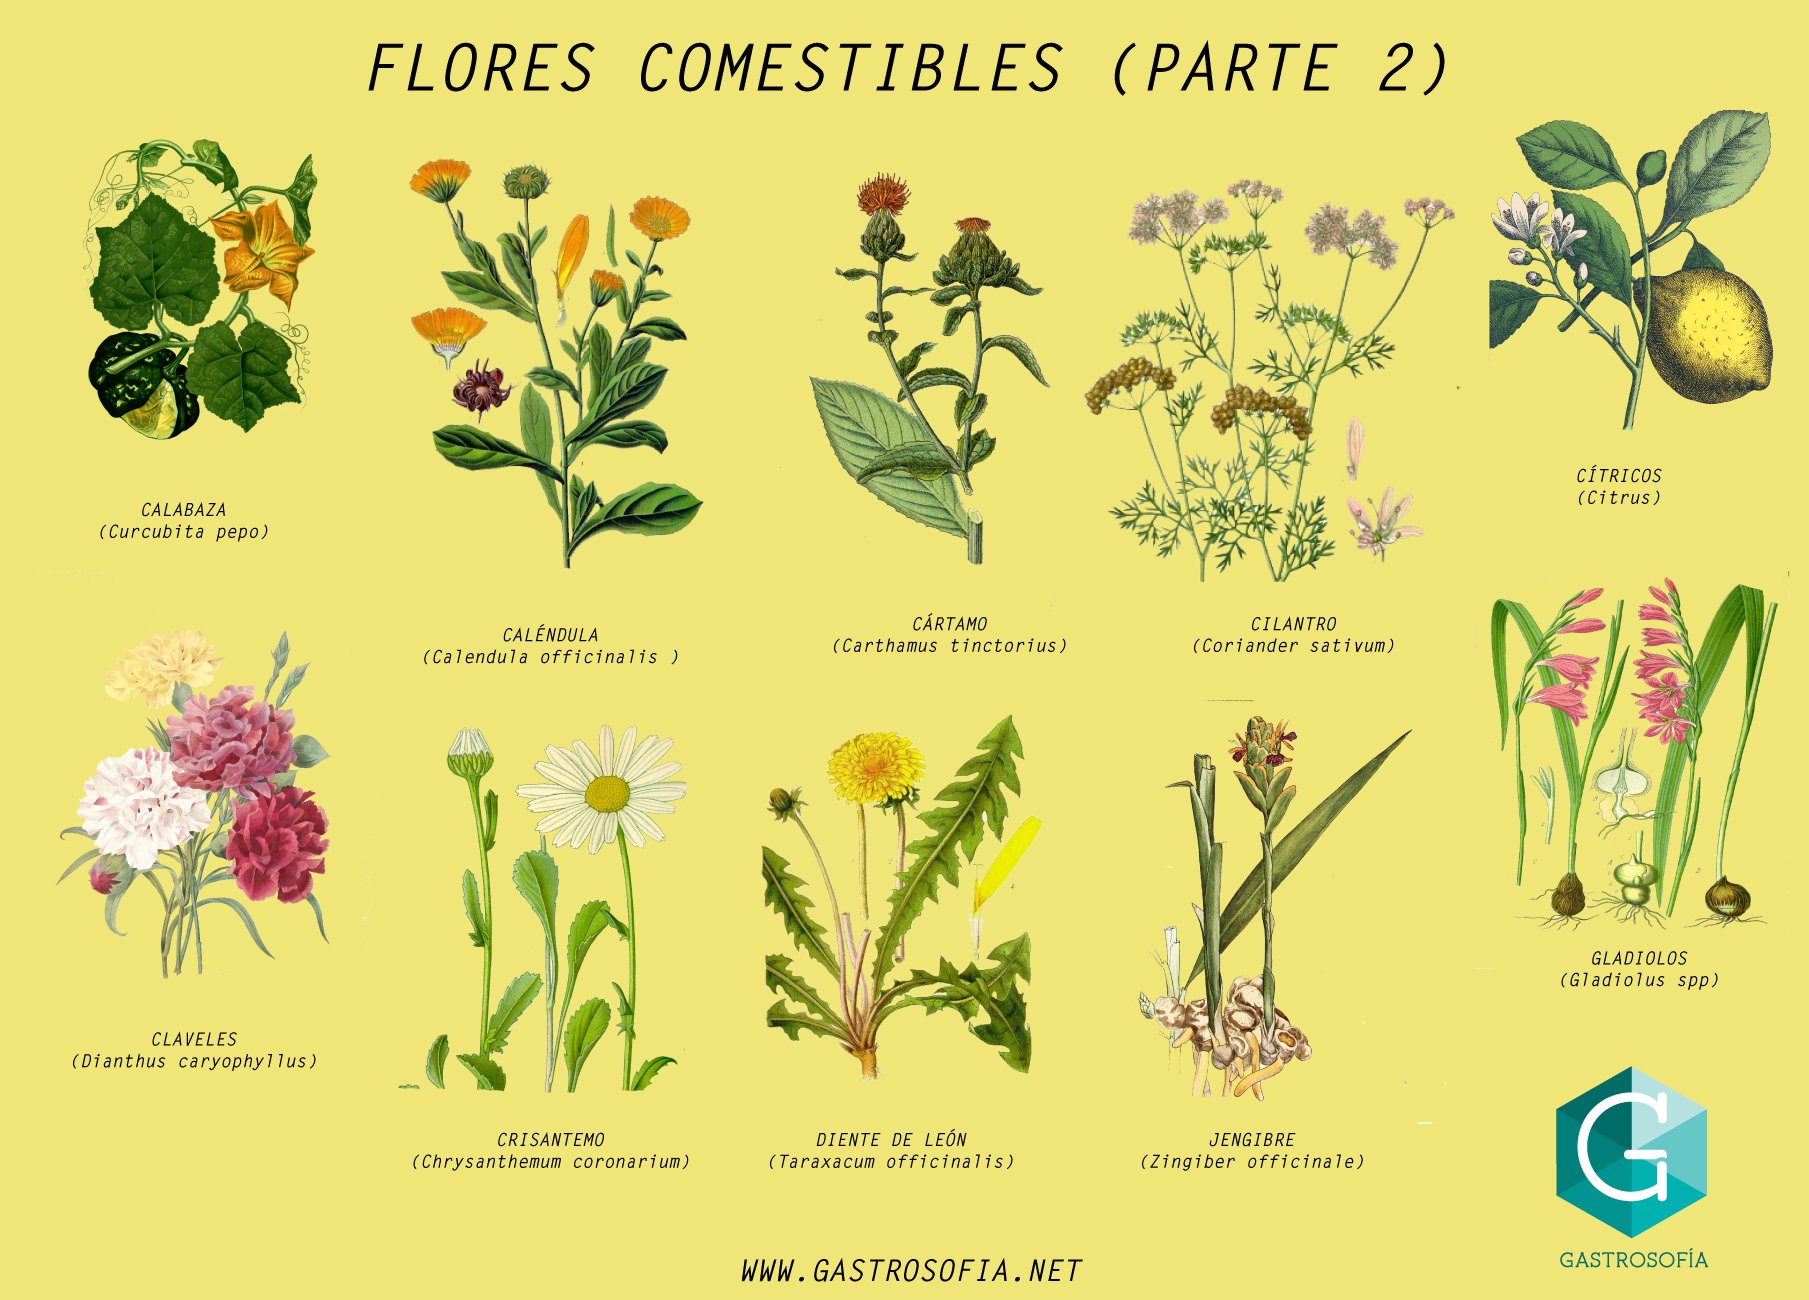 Divulgación de la Ciencia, UNAM - ¡Deli! 🌺 Flores comestibles 🌷  #RedescubreLaCiencia